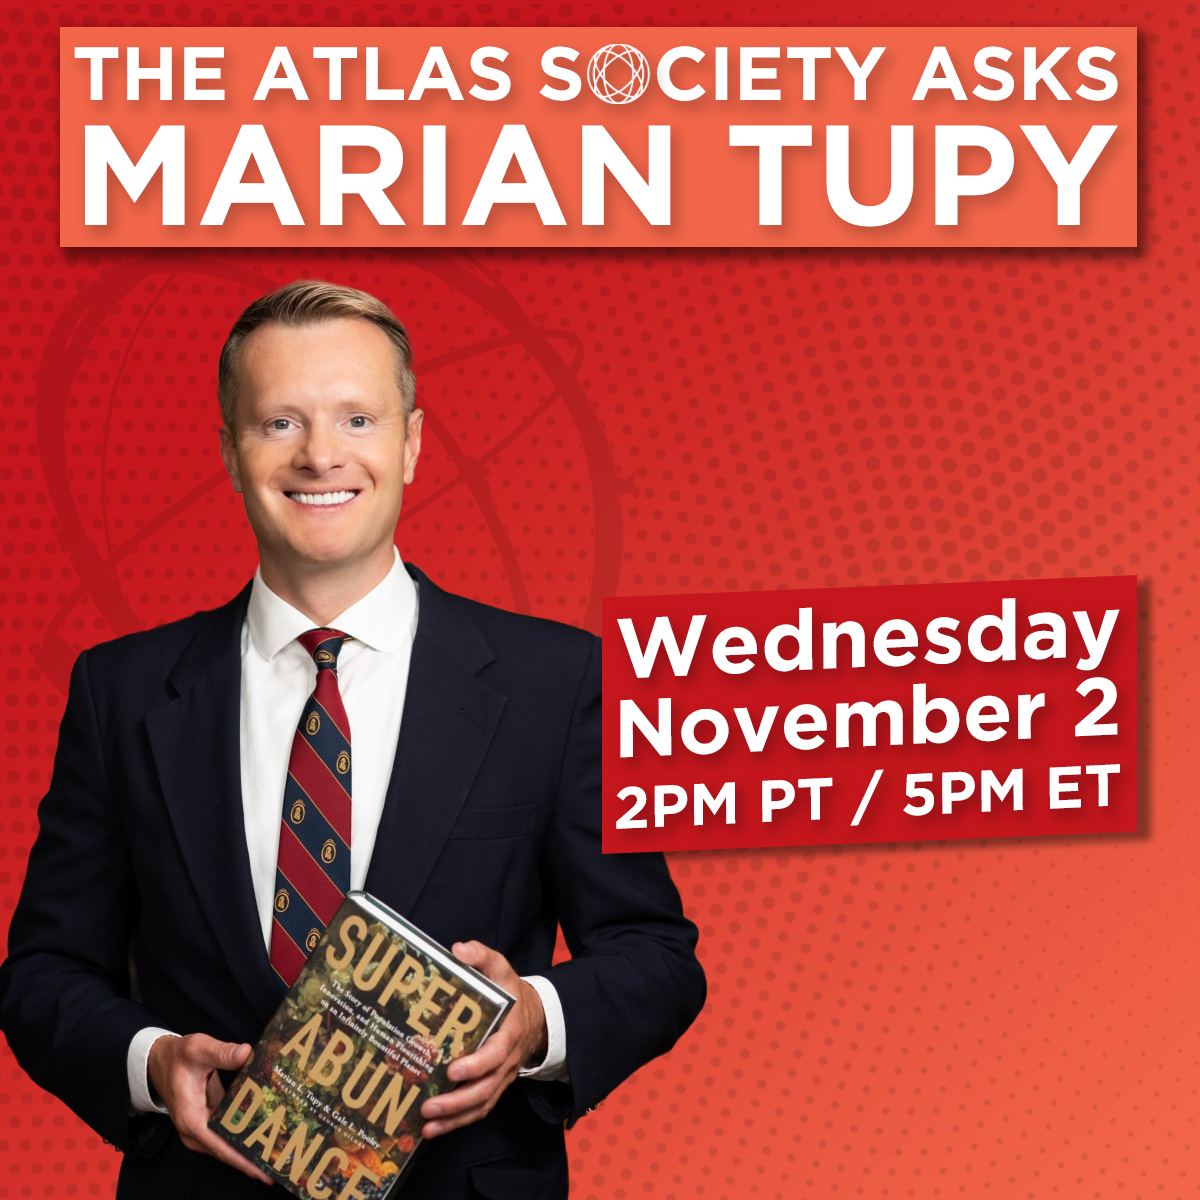 The Atlas Society Asks Marian Tupy